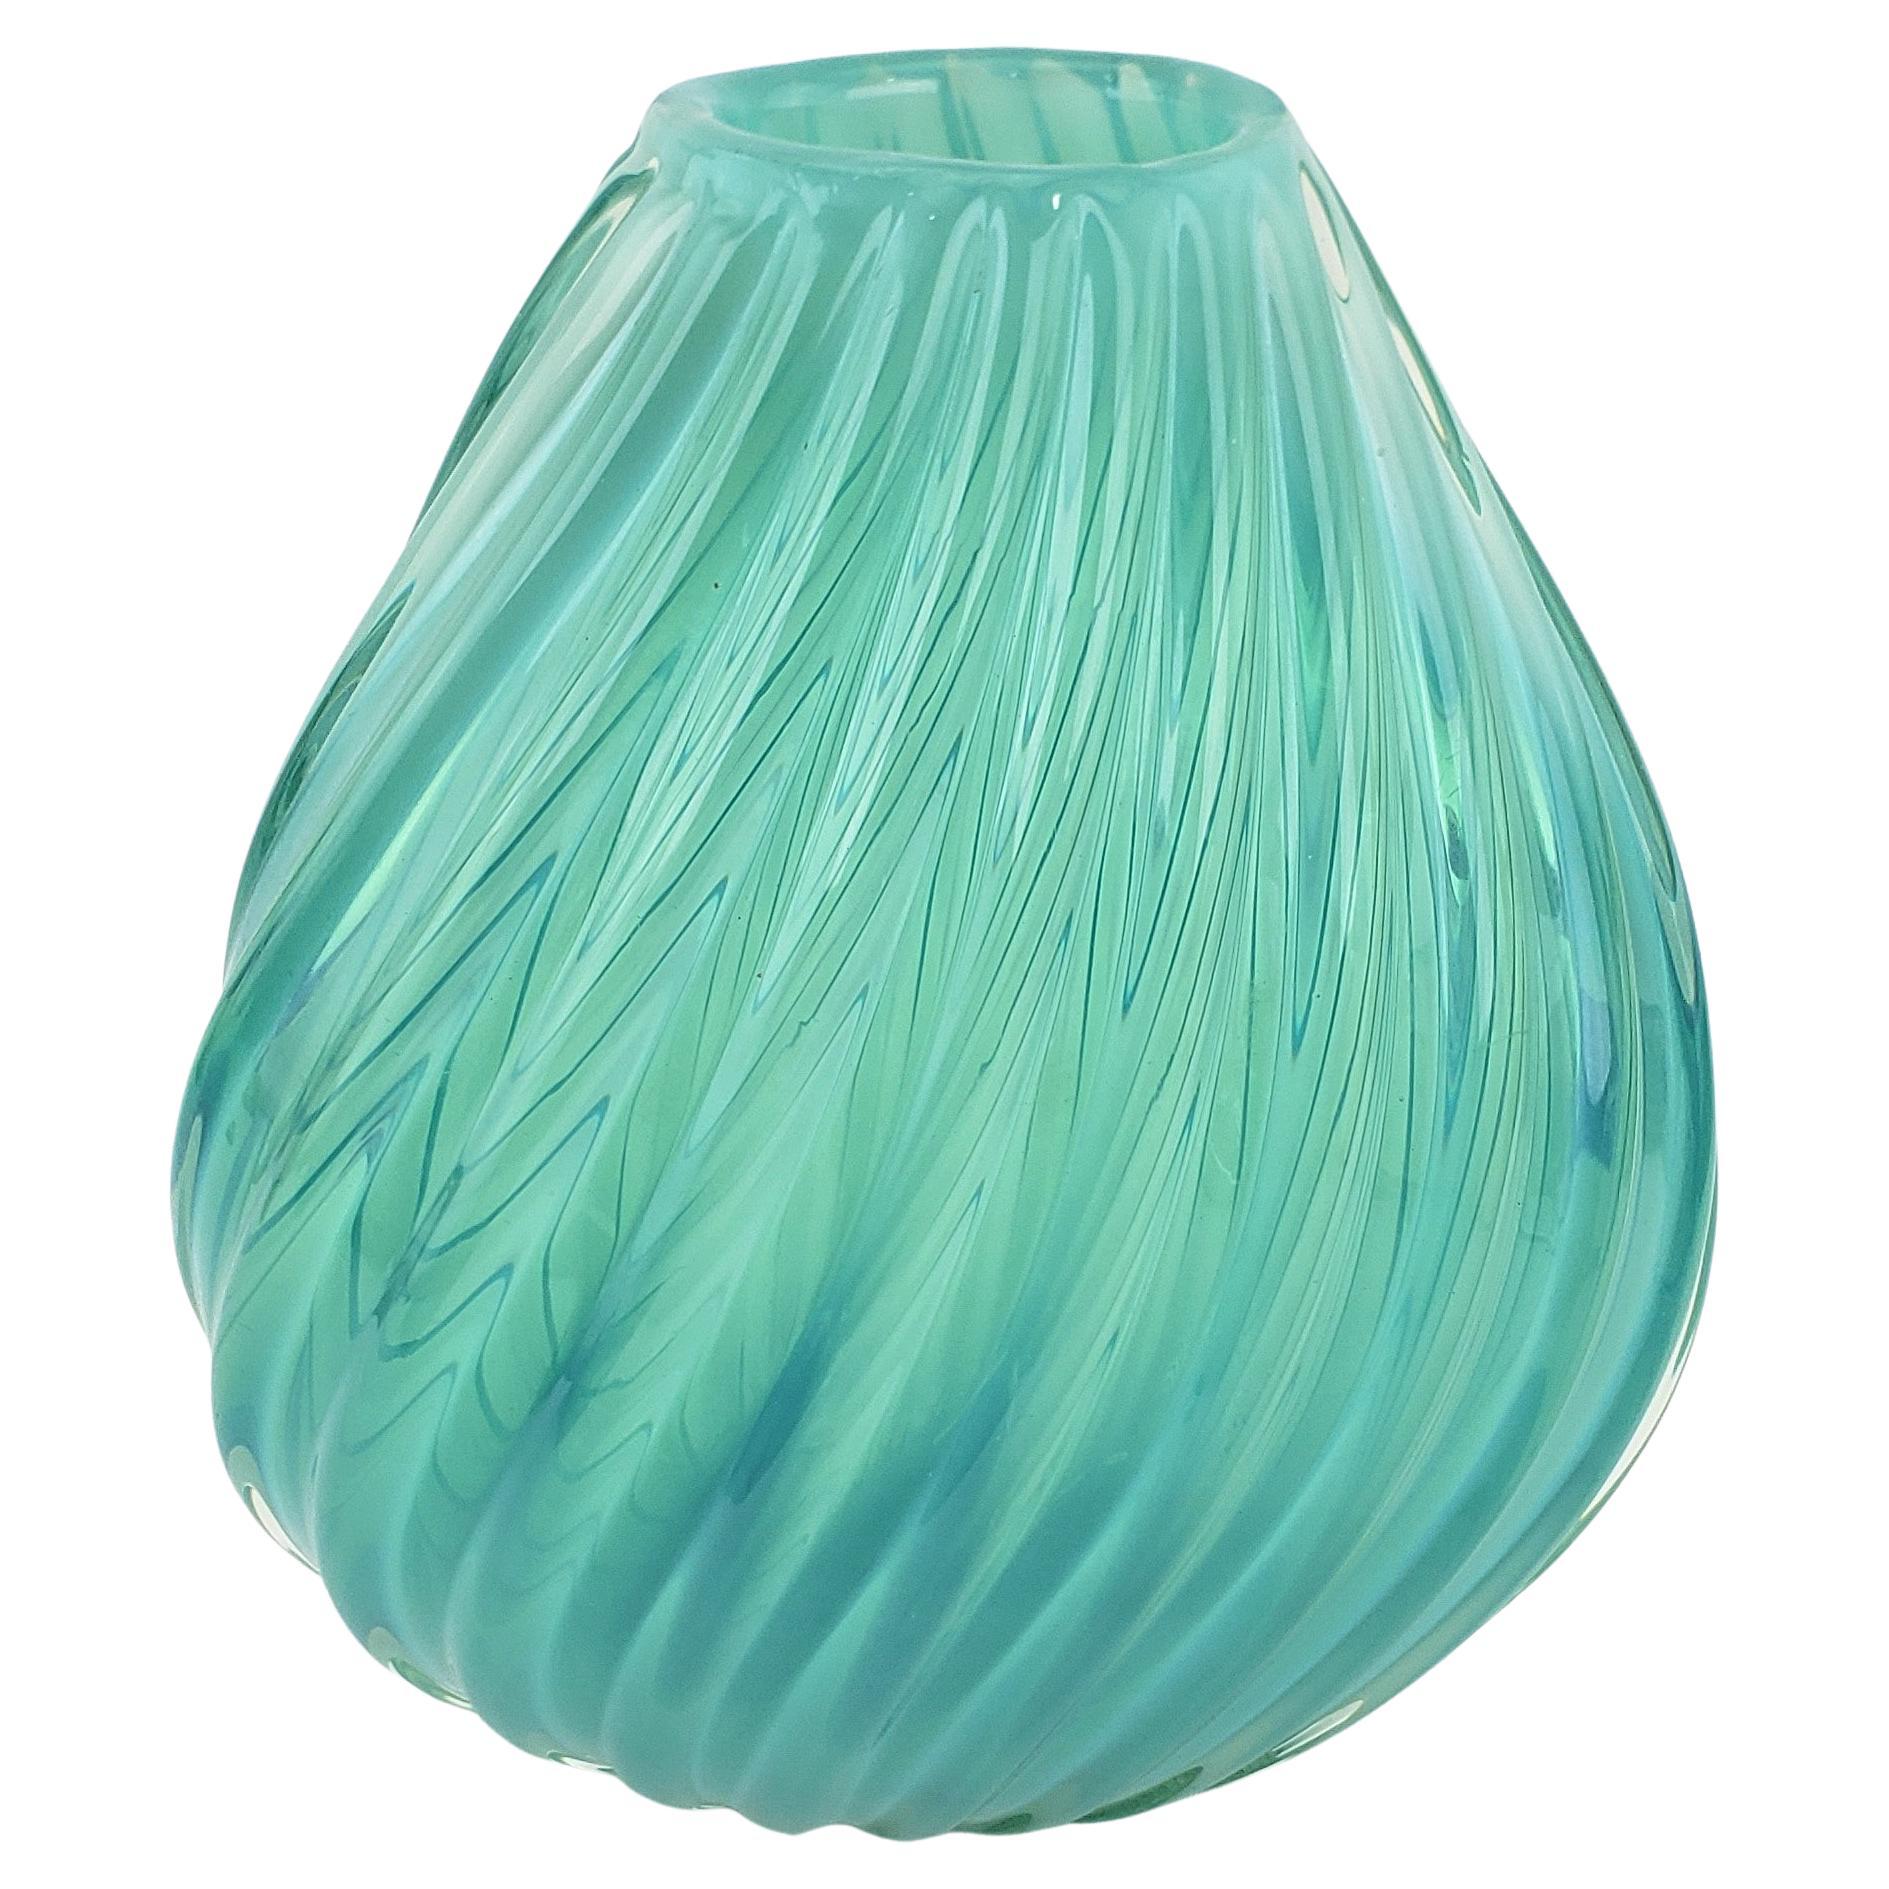 Vase en verre d'art côtelé de style Barovier, mi-siècle moderne, turquoise ou aigue-marine